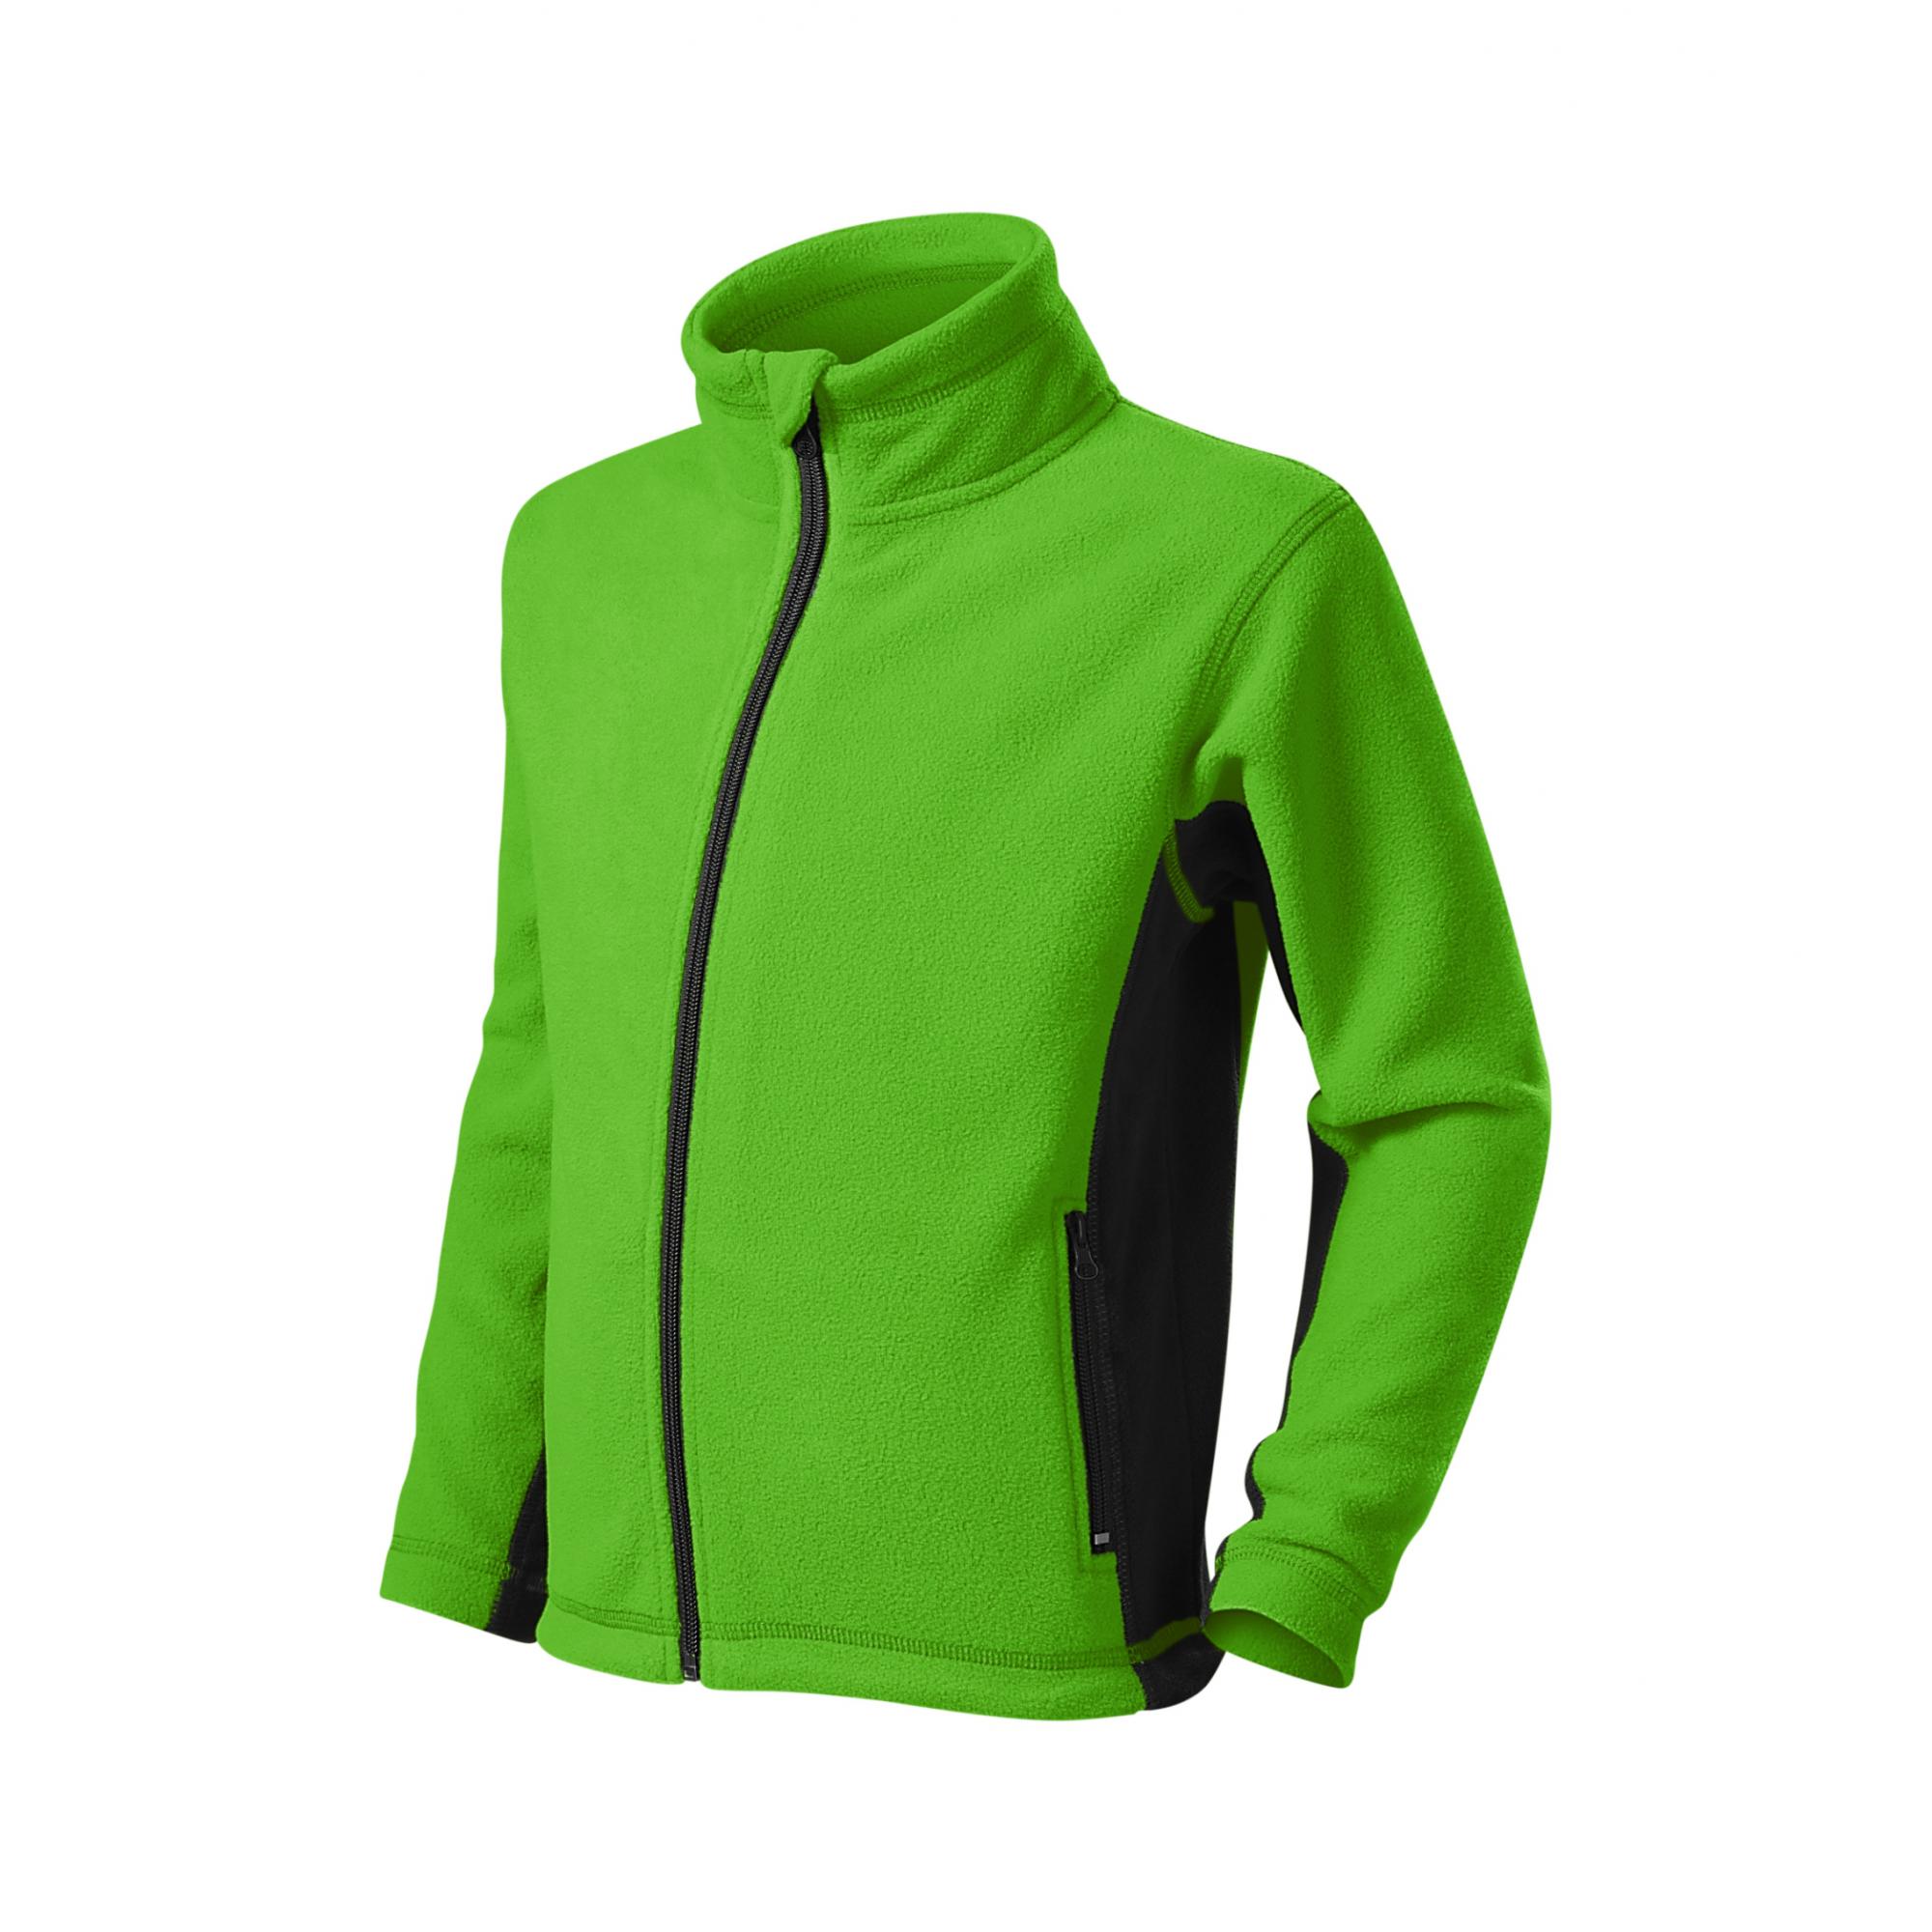 Jachetă fleece pentru copii Frosty 529 Verde mar 8ani